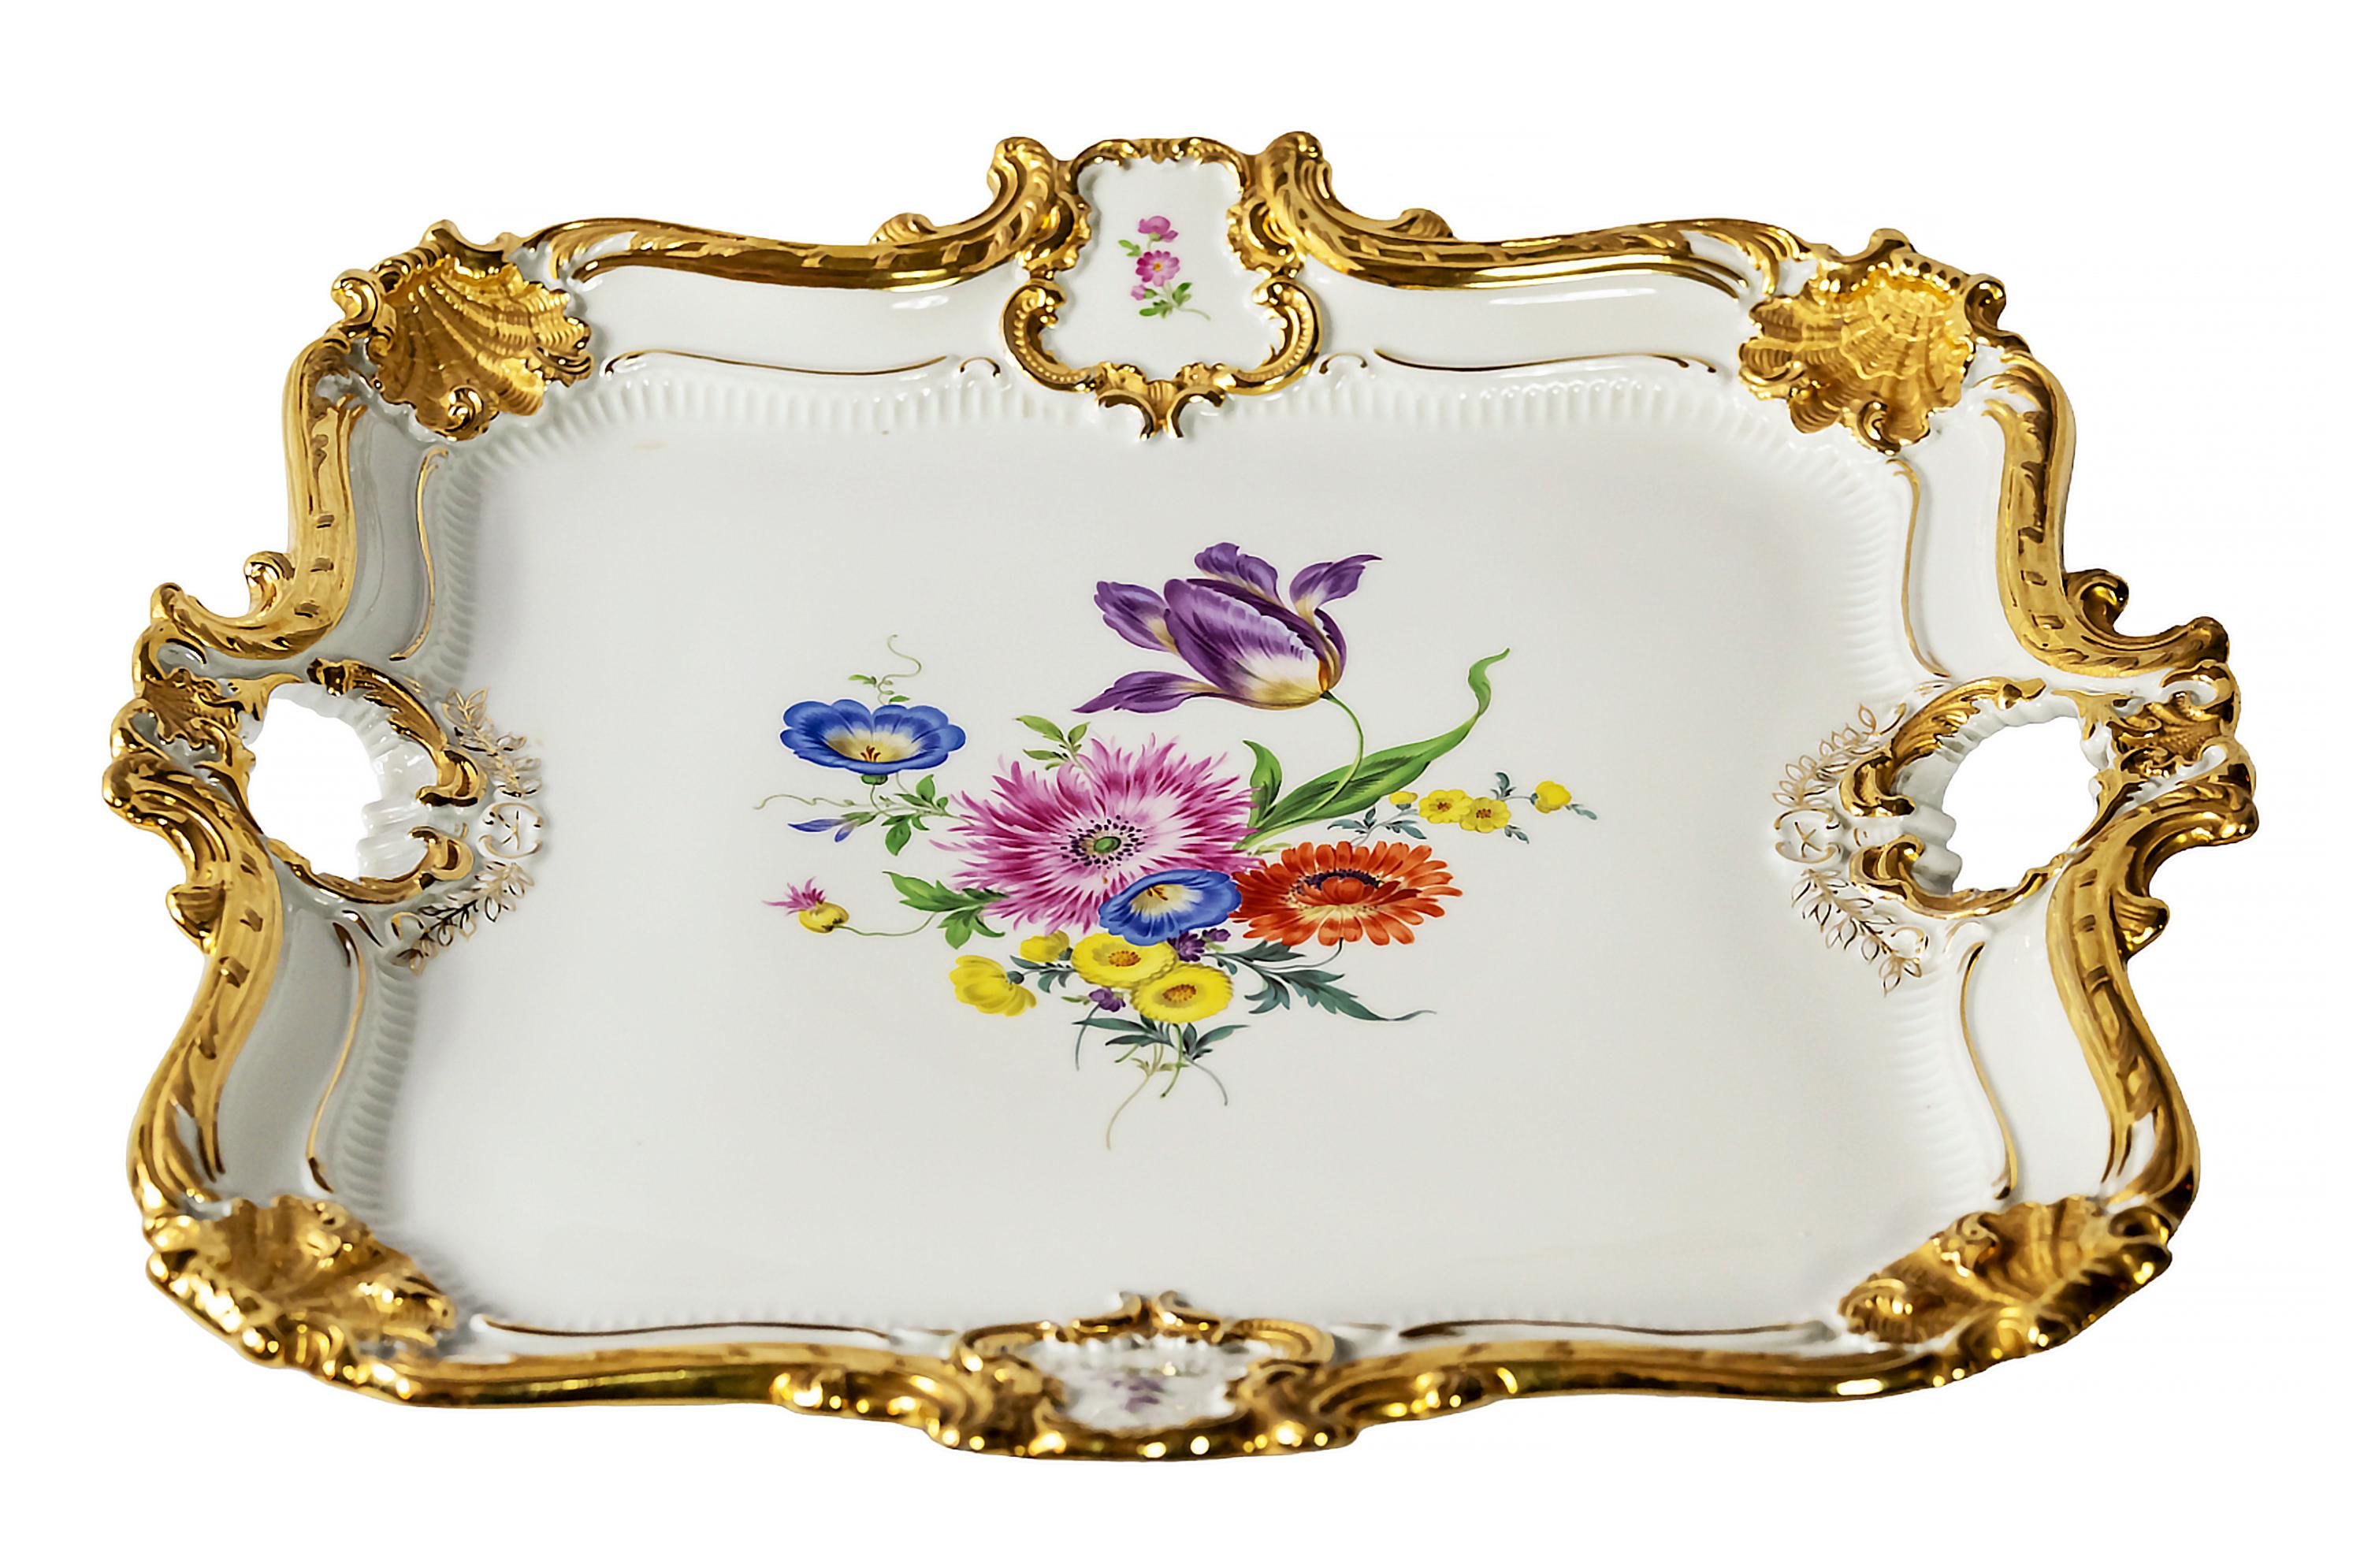 Grand plat de service/plateau en porcelaine de Meissen avec motifs floraux peints à la main et riche décor doré.
Marqué sur le fond. Épée à deux tranchants.